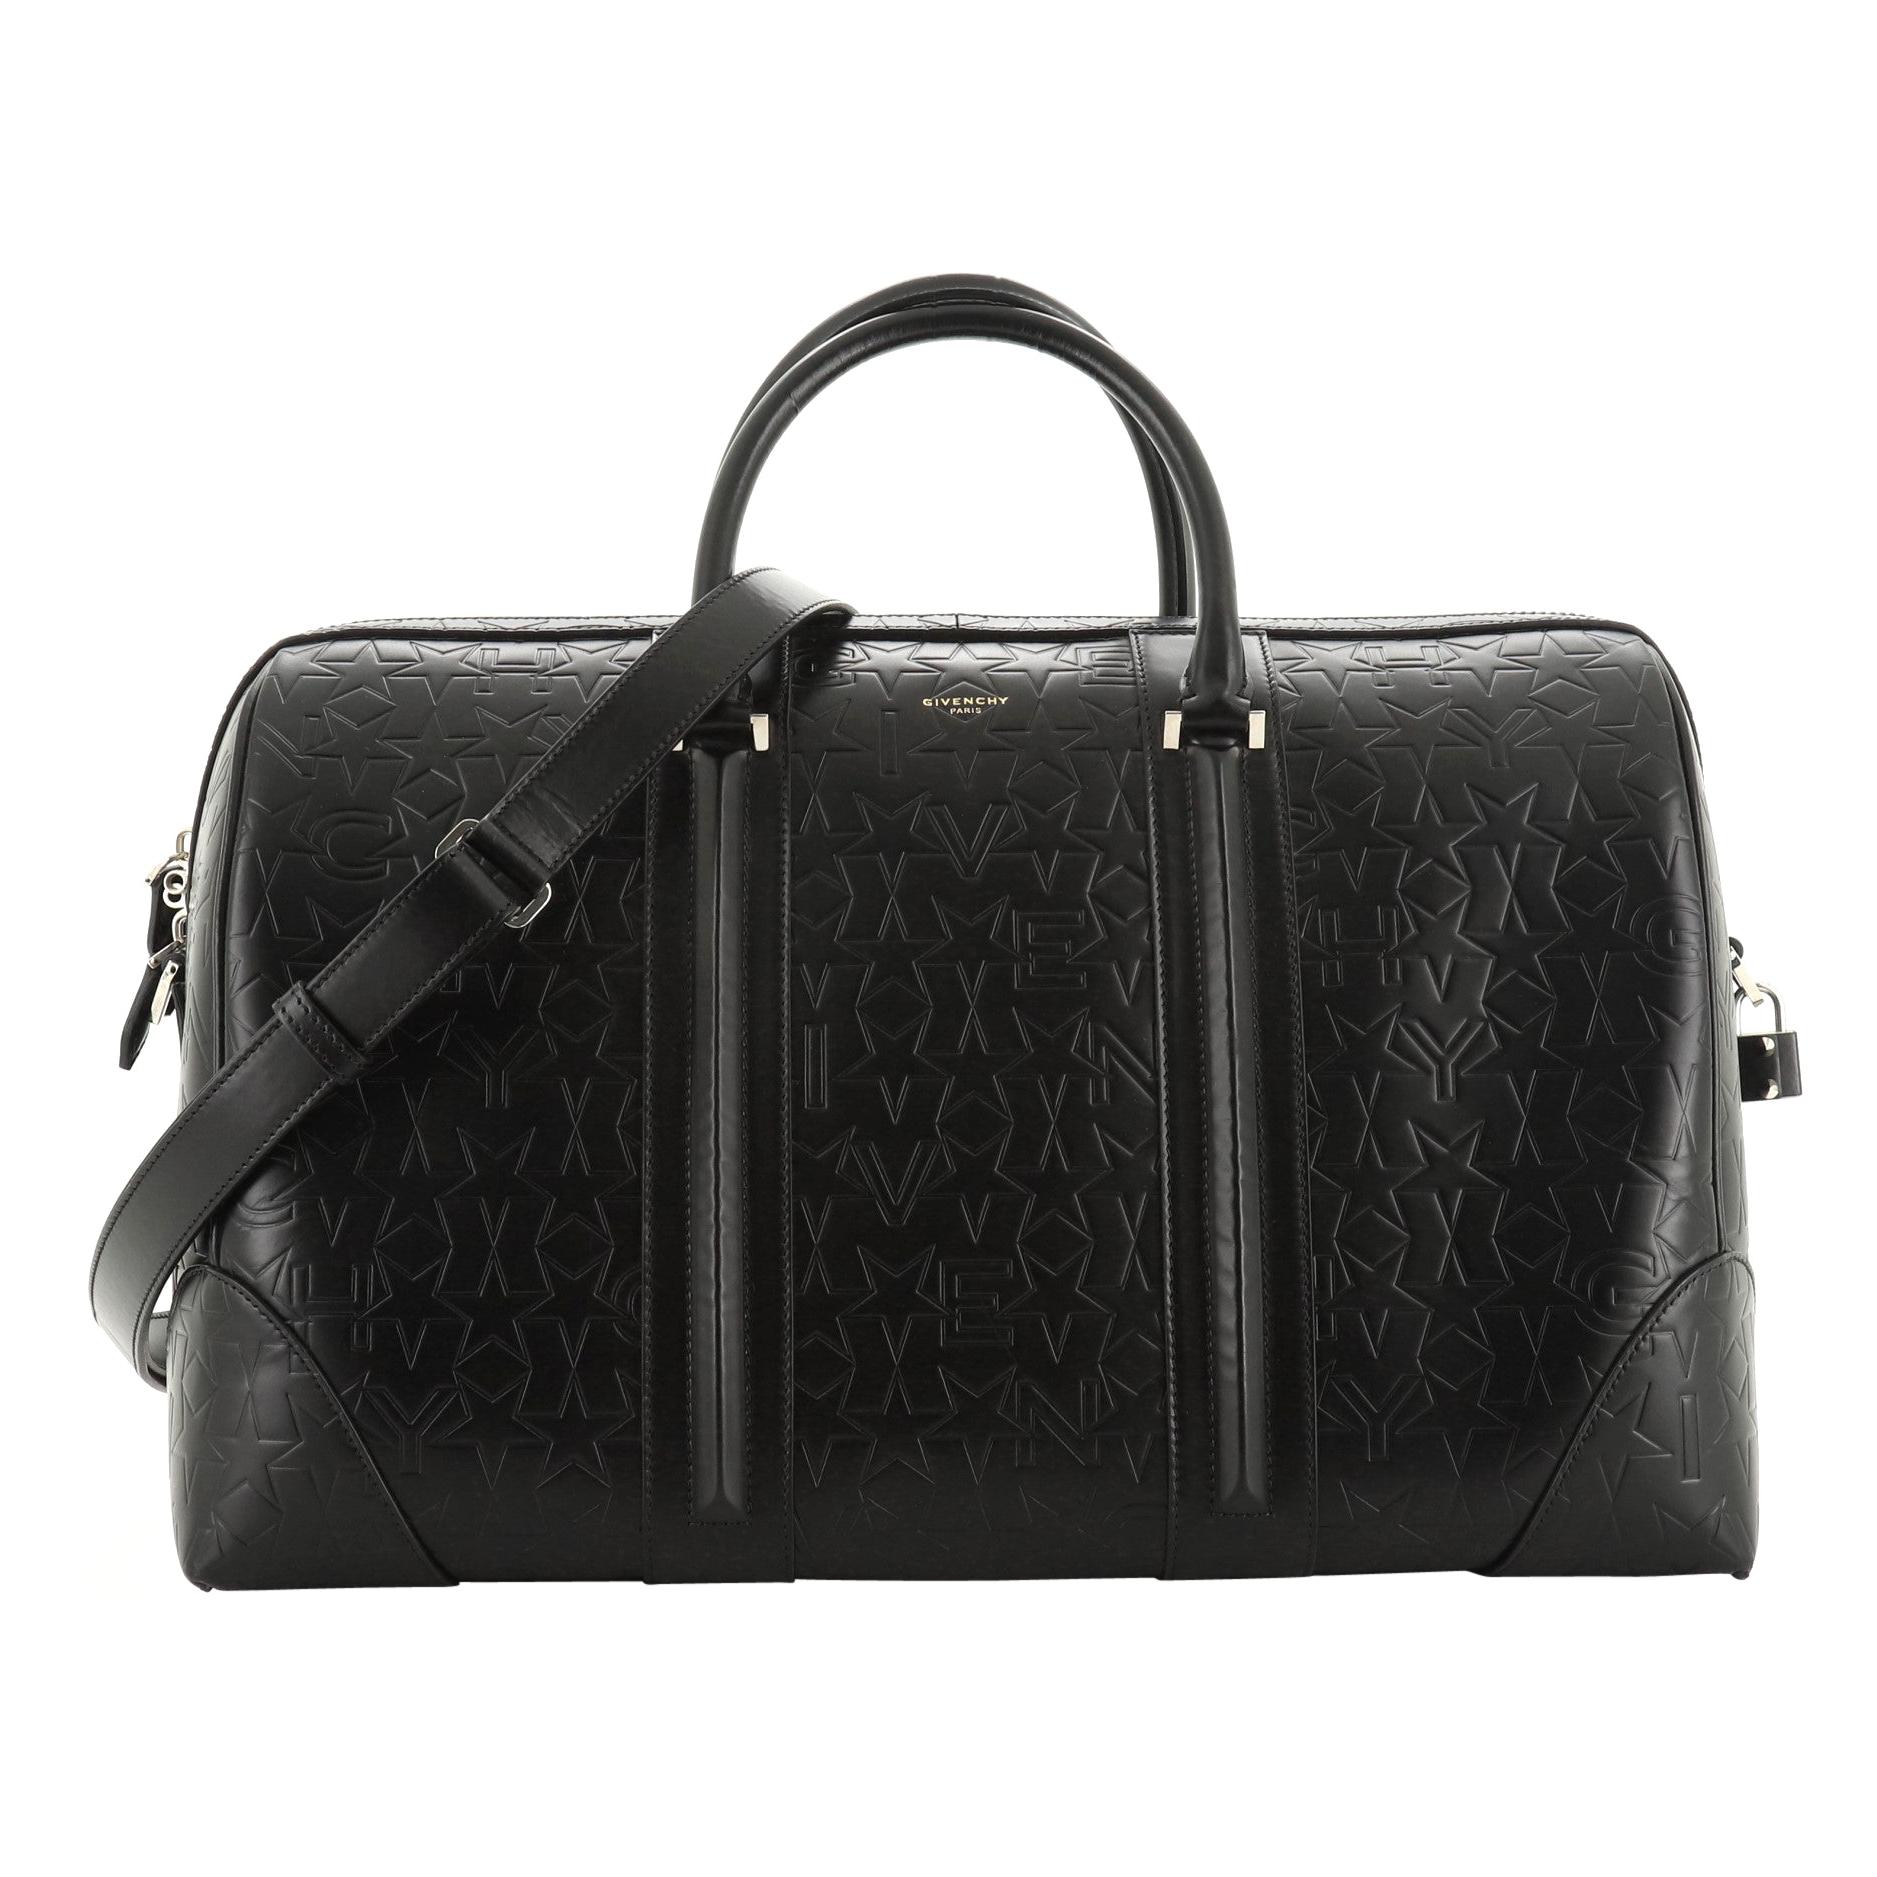 Givenchy Lucrezia Travel Bag